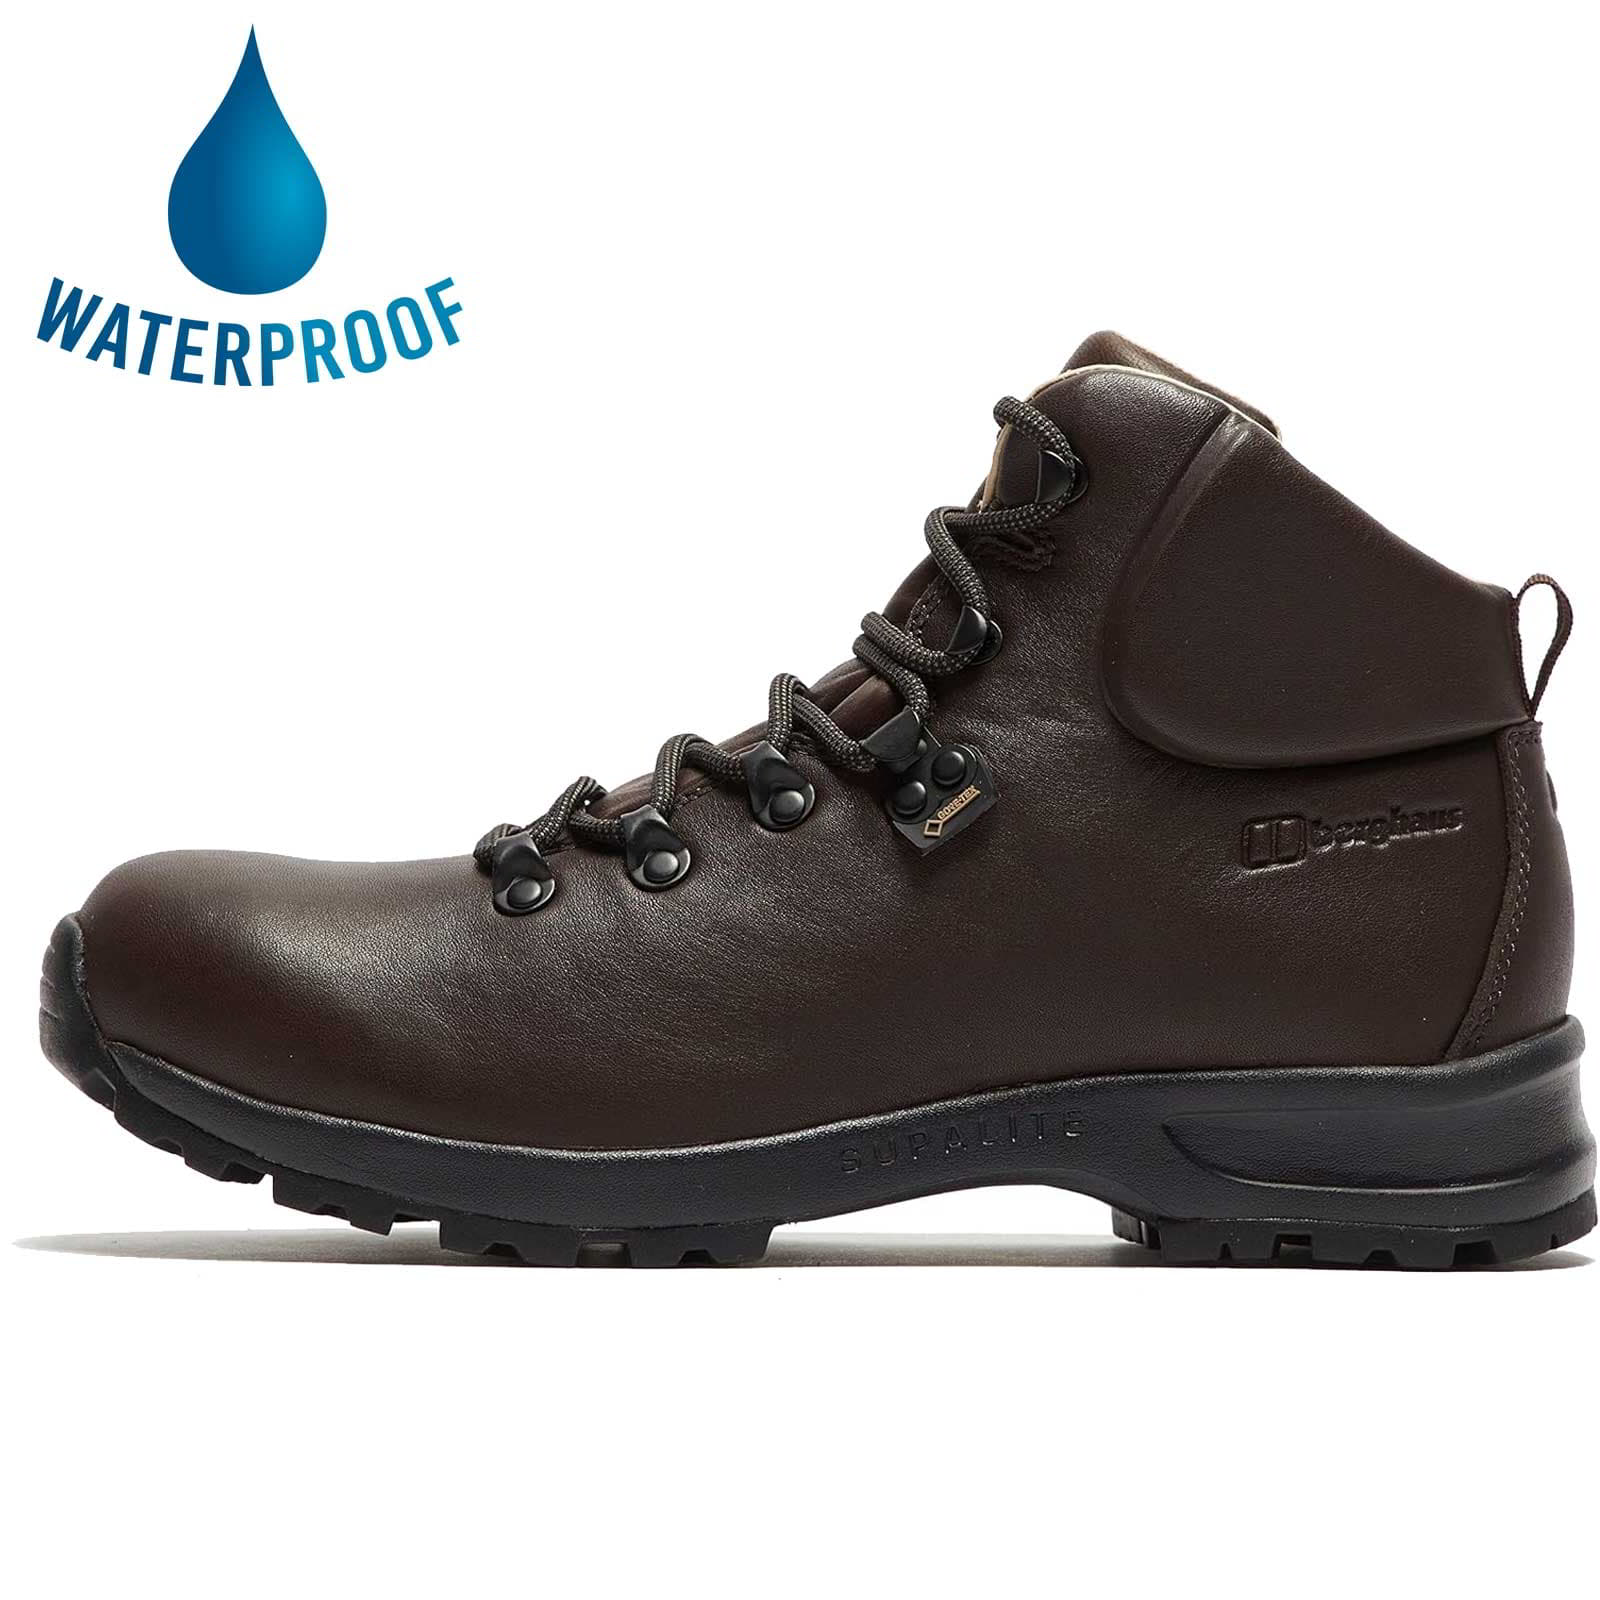 Brasher by Berghaus Mens Supalite II GTX Waterproof Boots - Brown